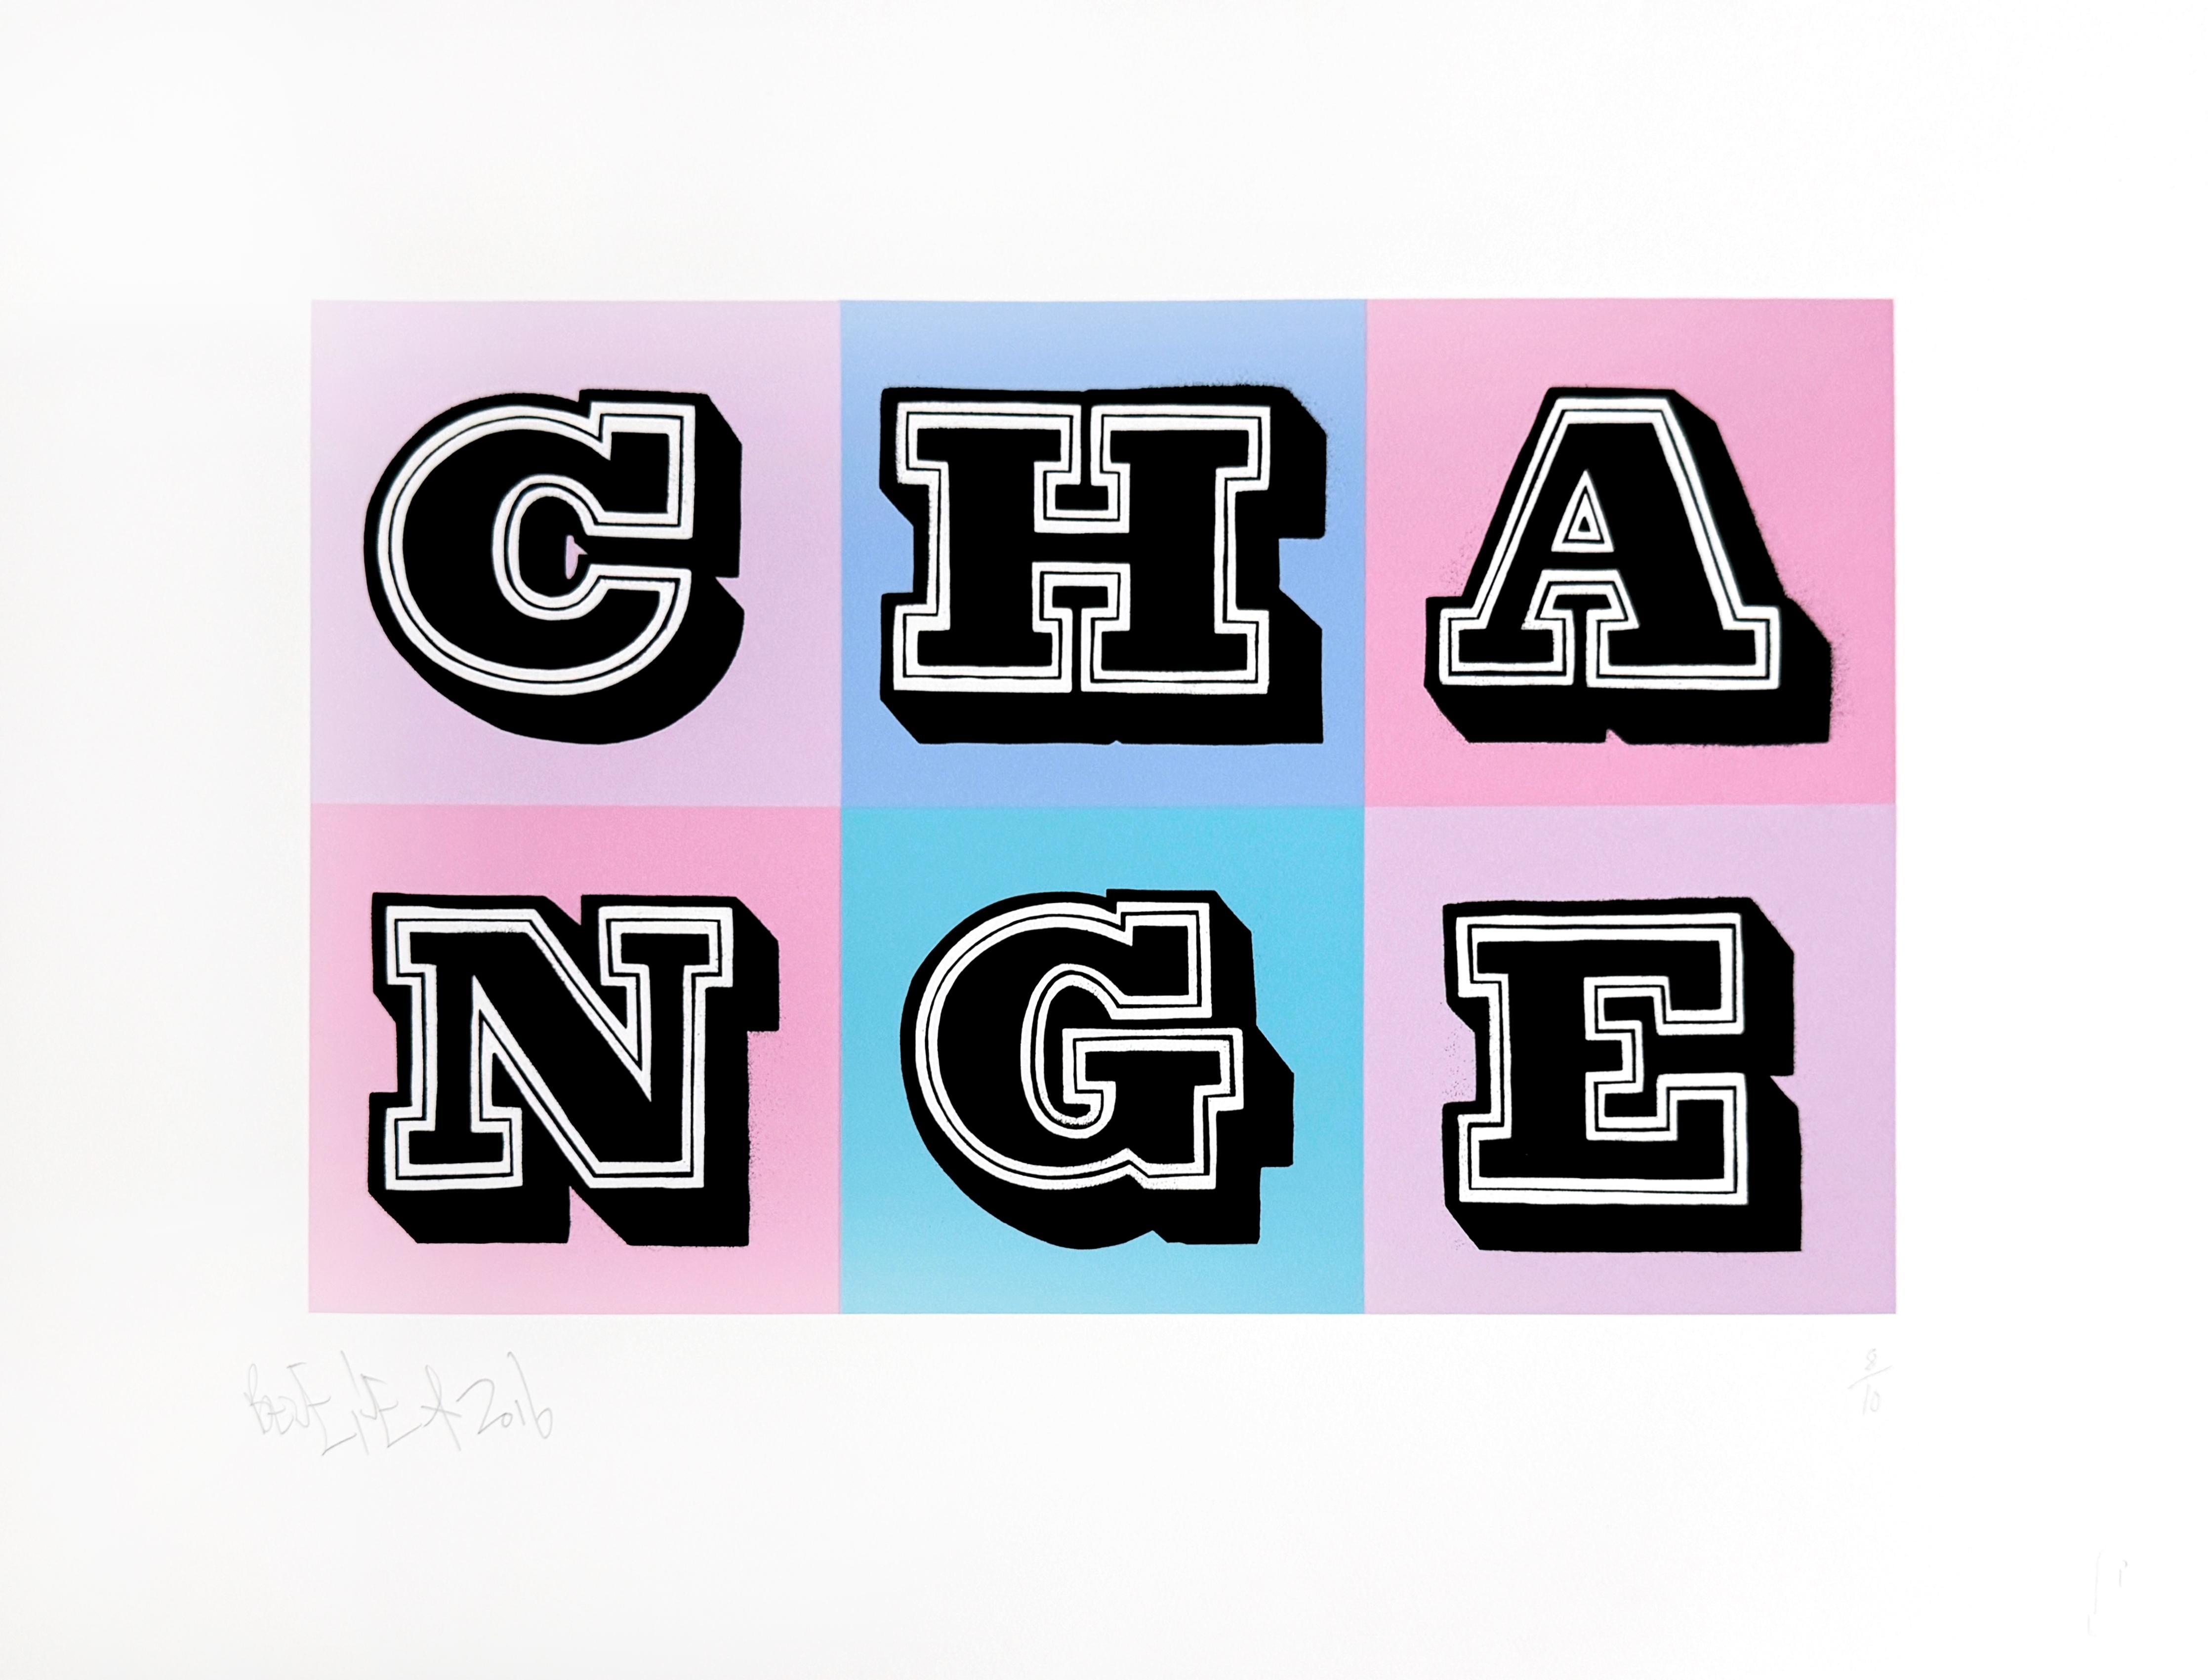 Change, Special edition - Print by Ben Eine